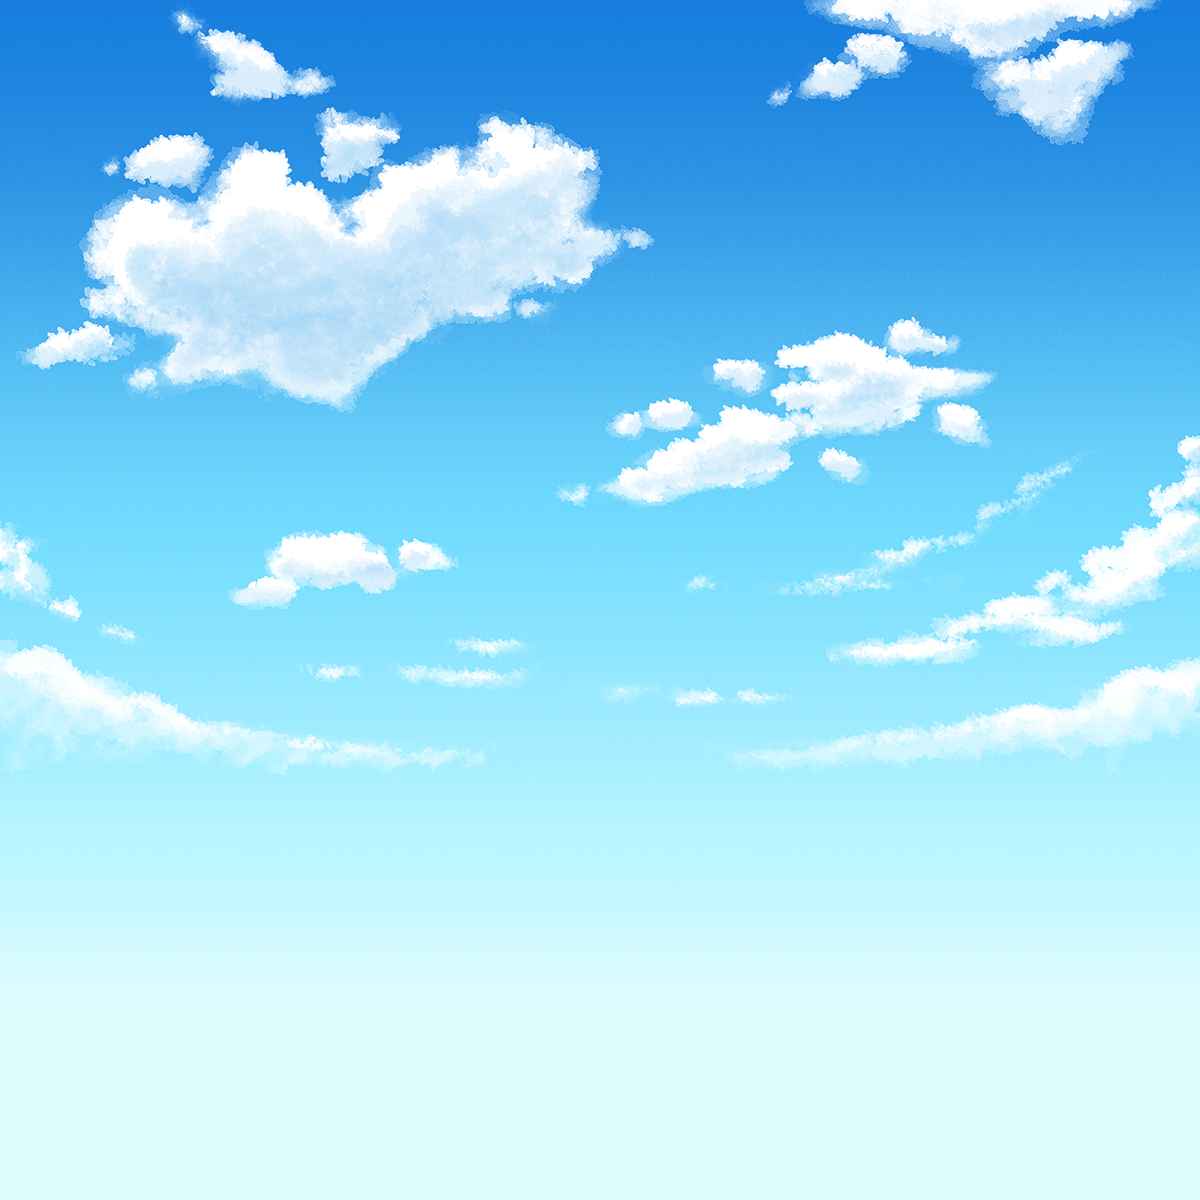 アニメ風の空と雲の無料イラスト